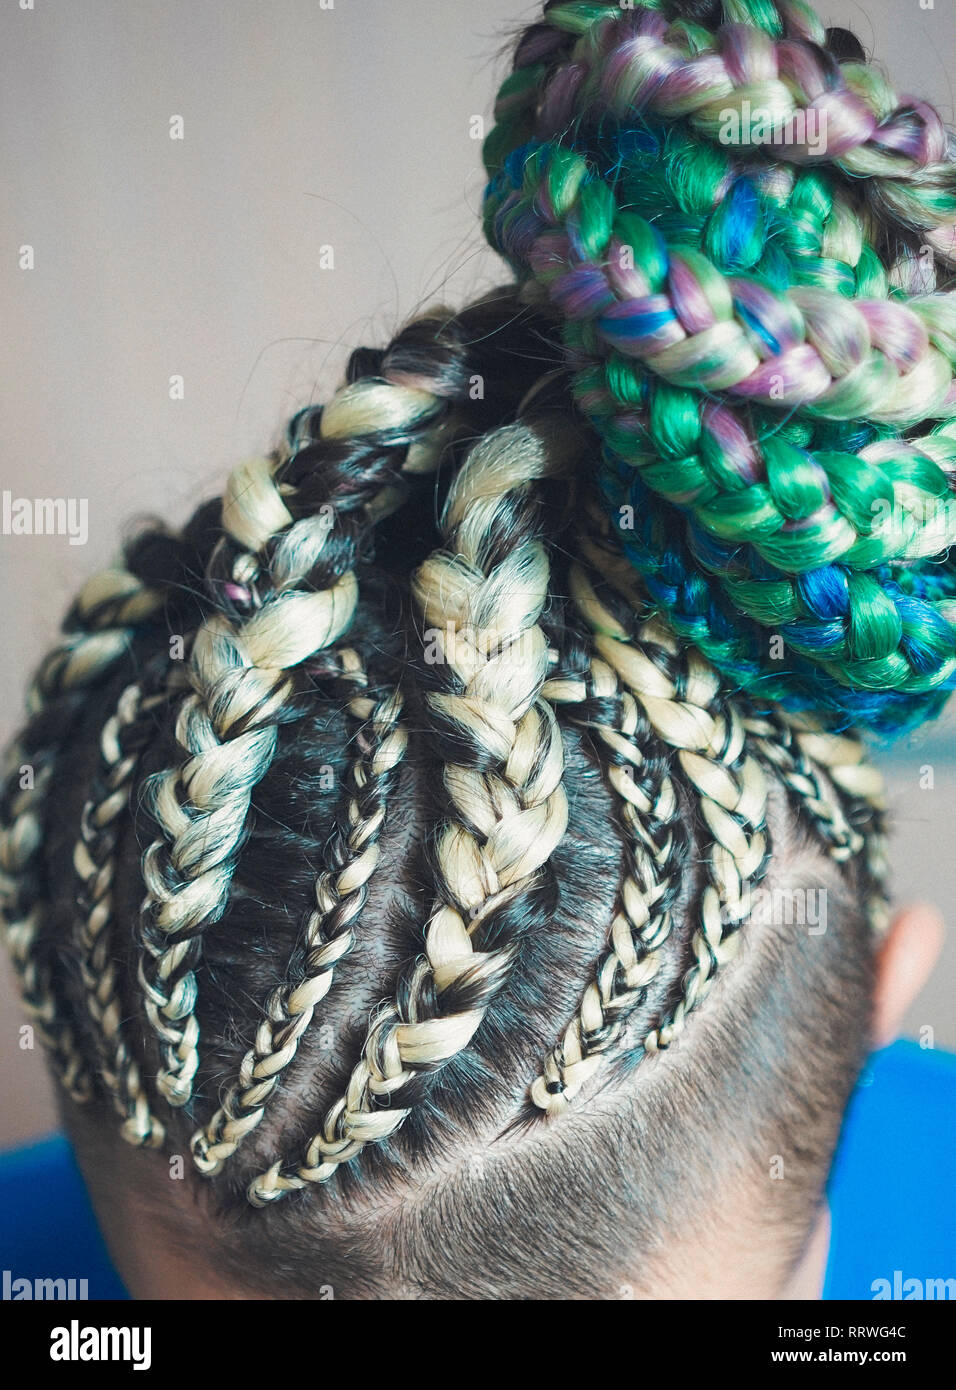 Cornrows donne una donna con un taglio di capelli su uno sfondo bianco, stretto trecce intrecciati con una coda, materiale artificiale tessute in suoi capelli Foto Stock